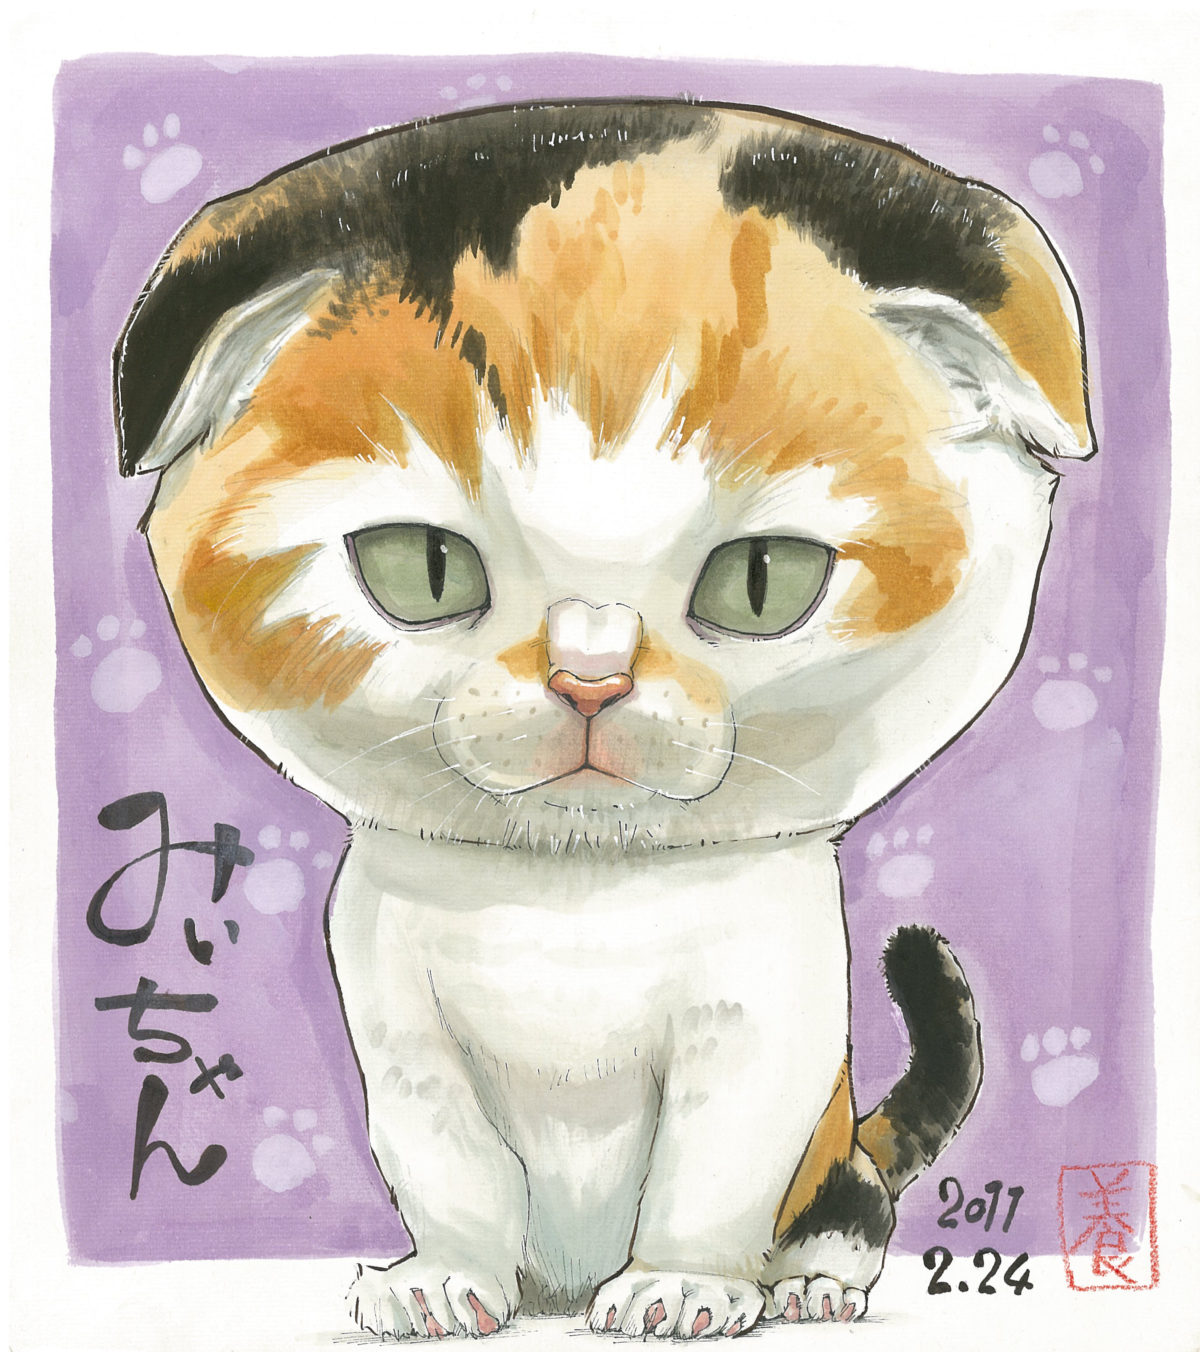 可愛いペットの似顔絵をネット通販でお描きします 猫のイラストとその